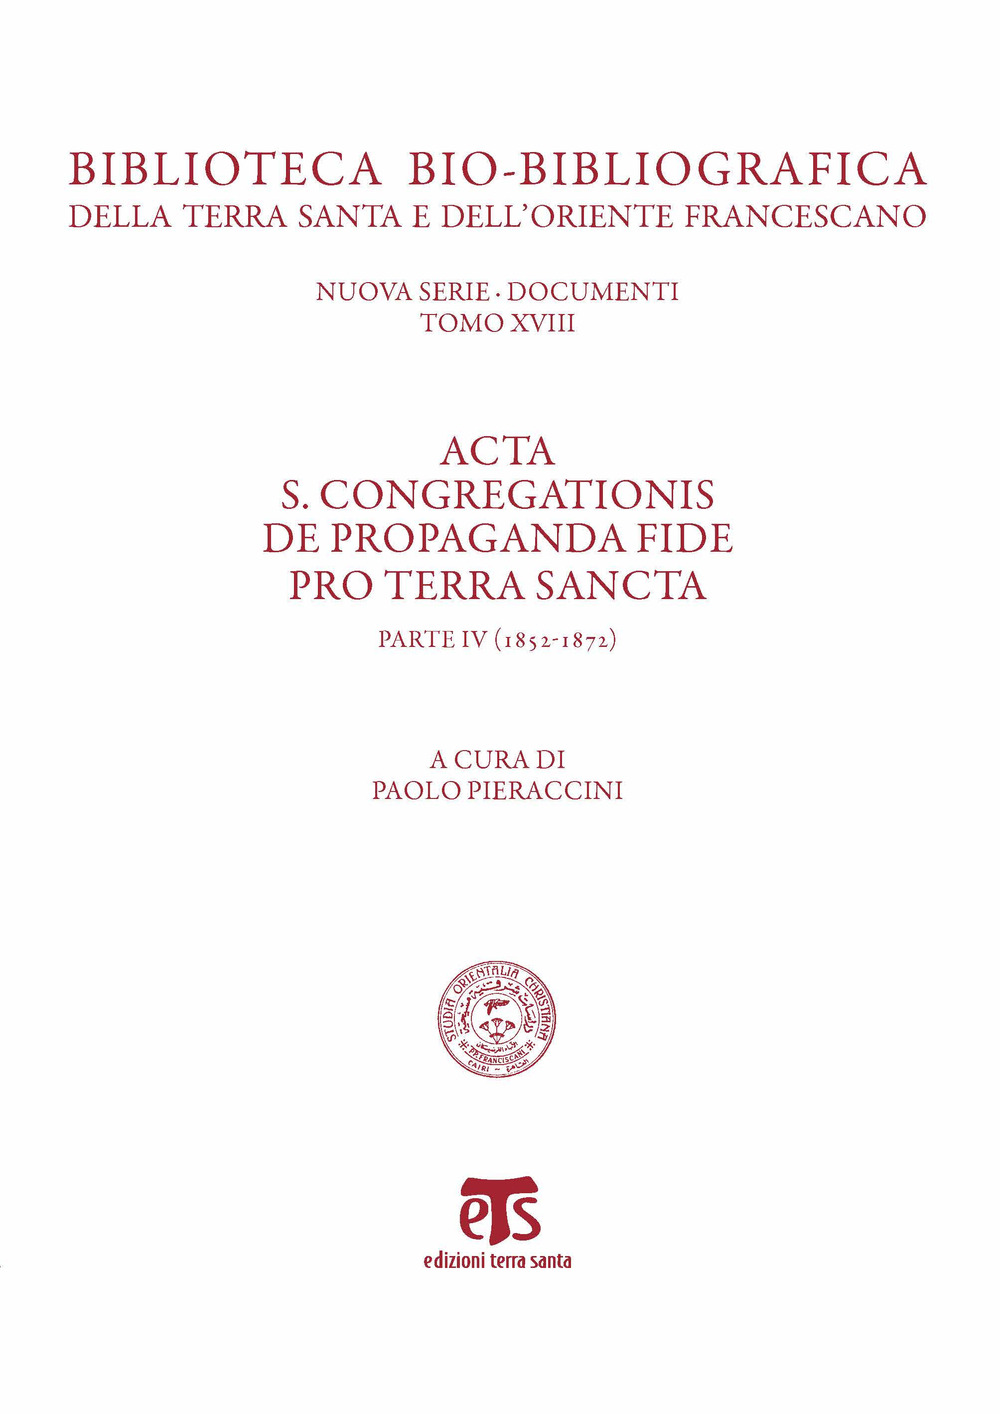 Acta S. Congregationis de Propaganda Fide pro Terra Sancta. Vol. 4: 1852-1872